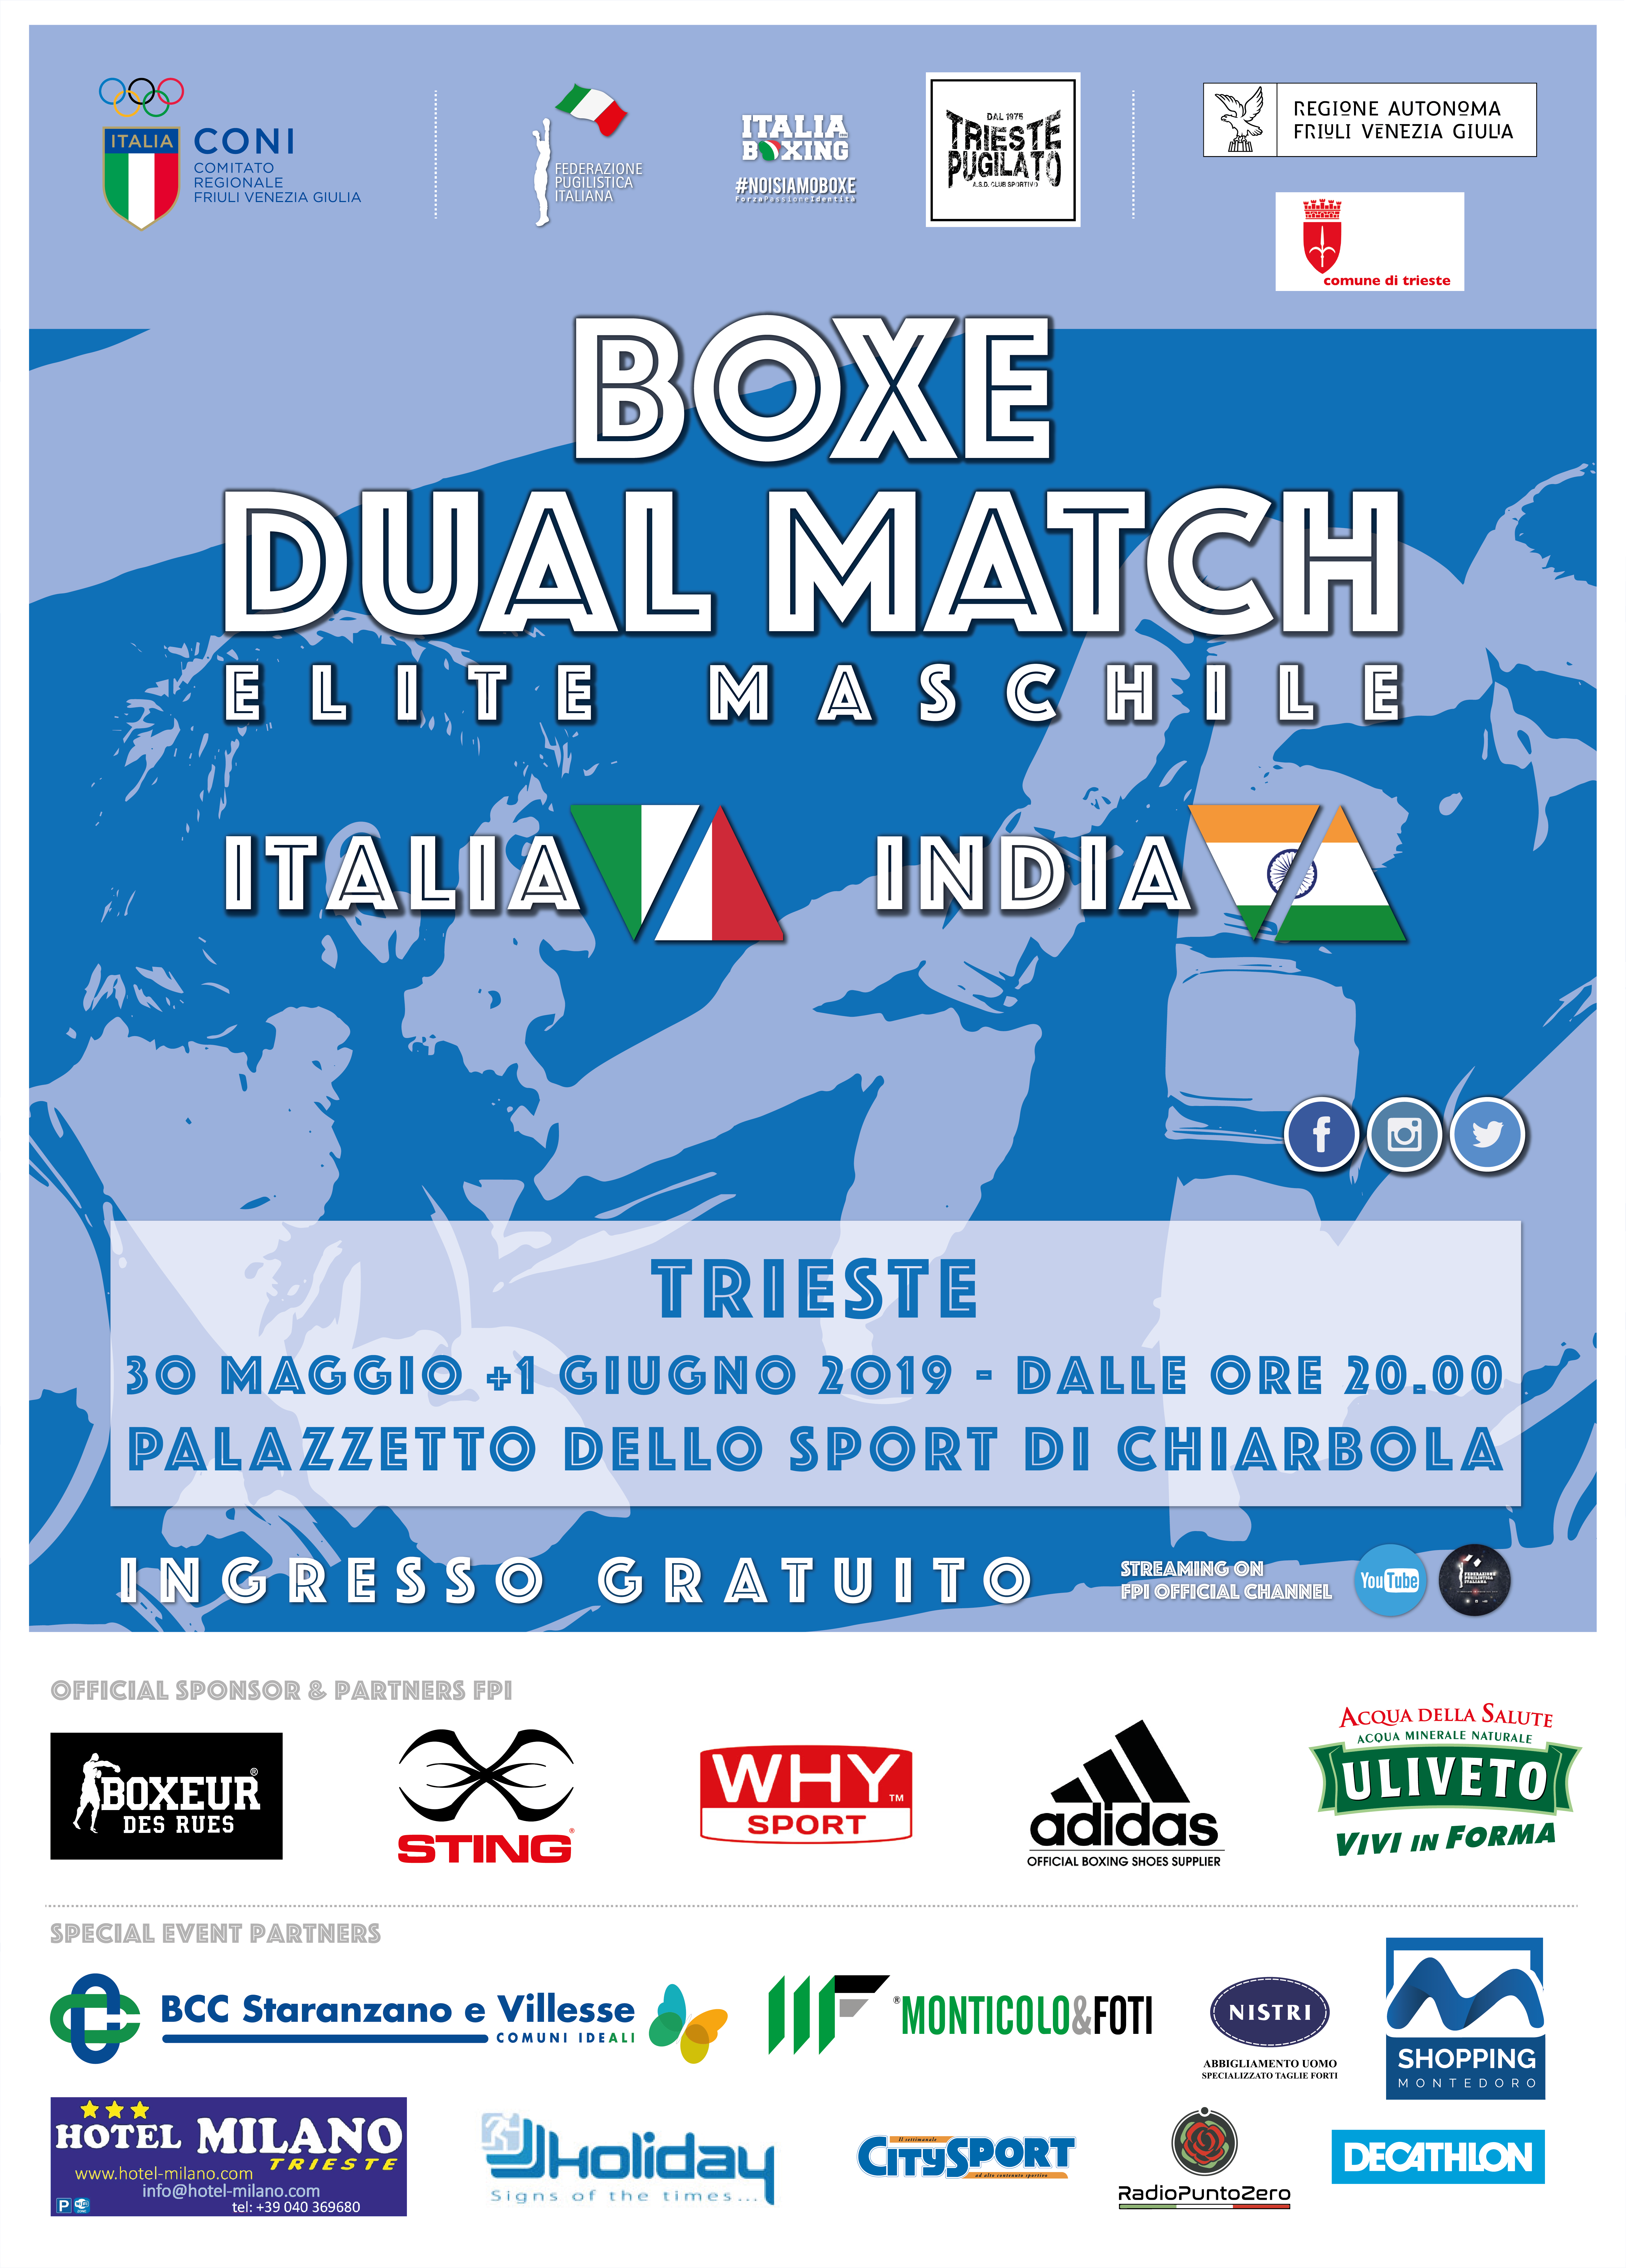 Domani a Trieste la prima delle due sfide tra gli Azzurri e l'India #ItaBoxing 